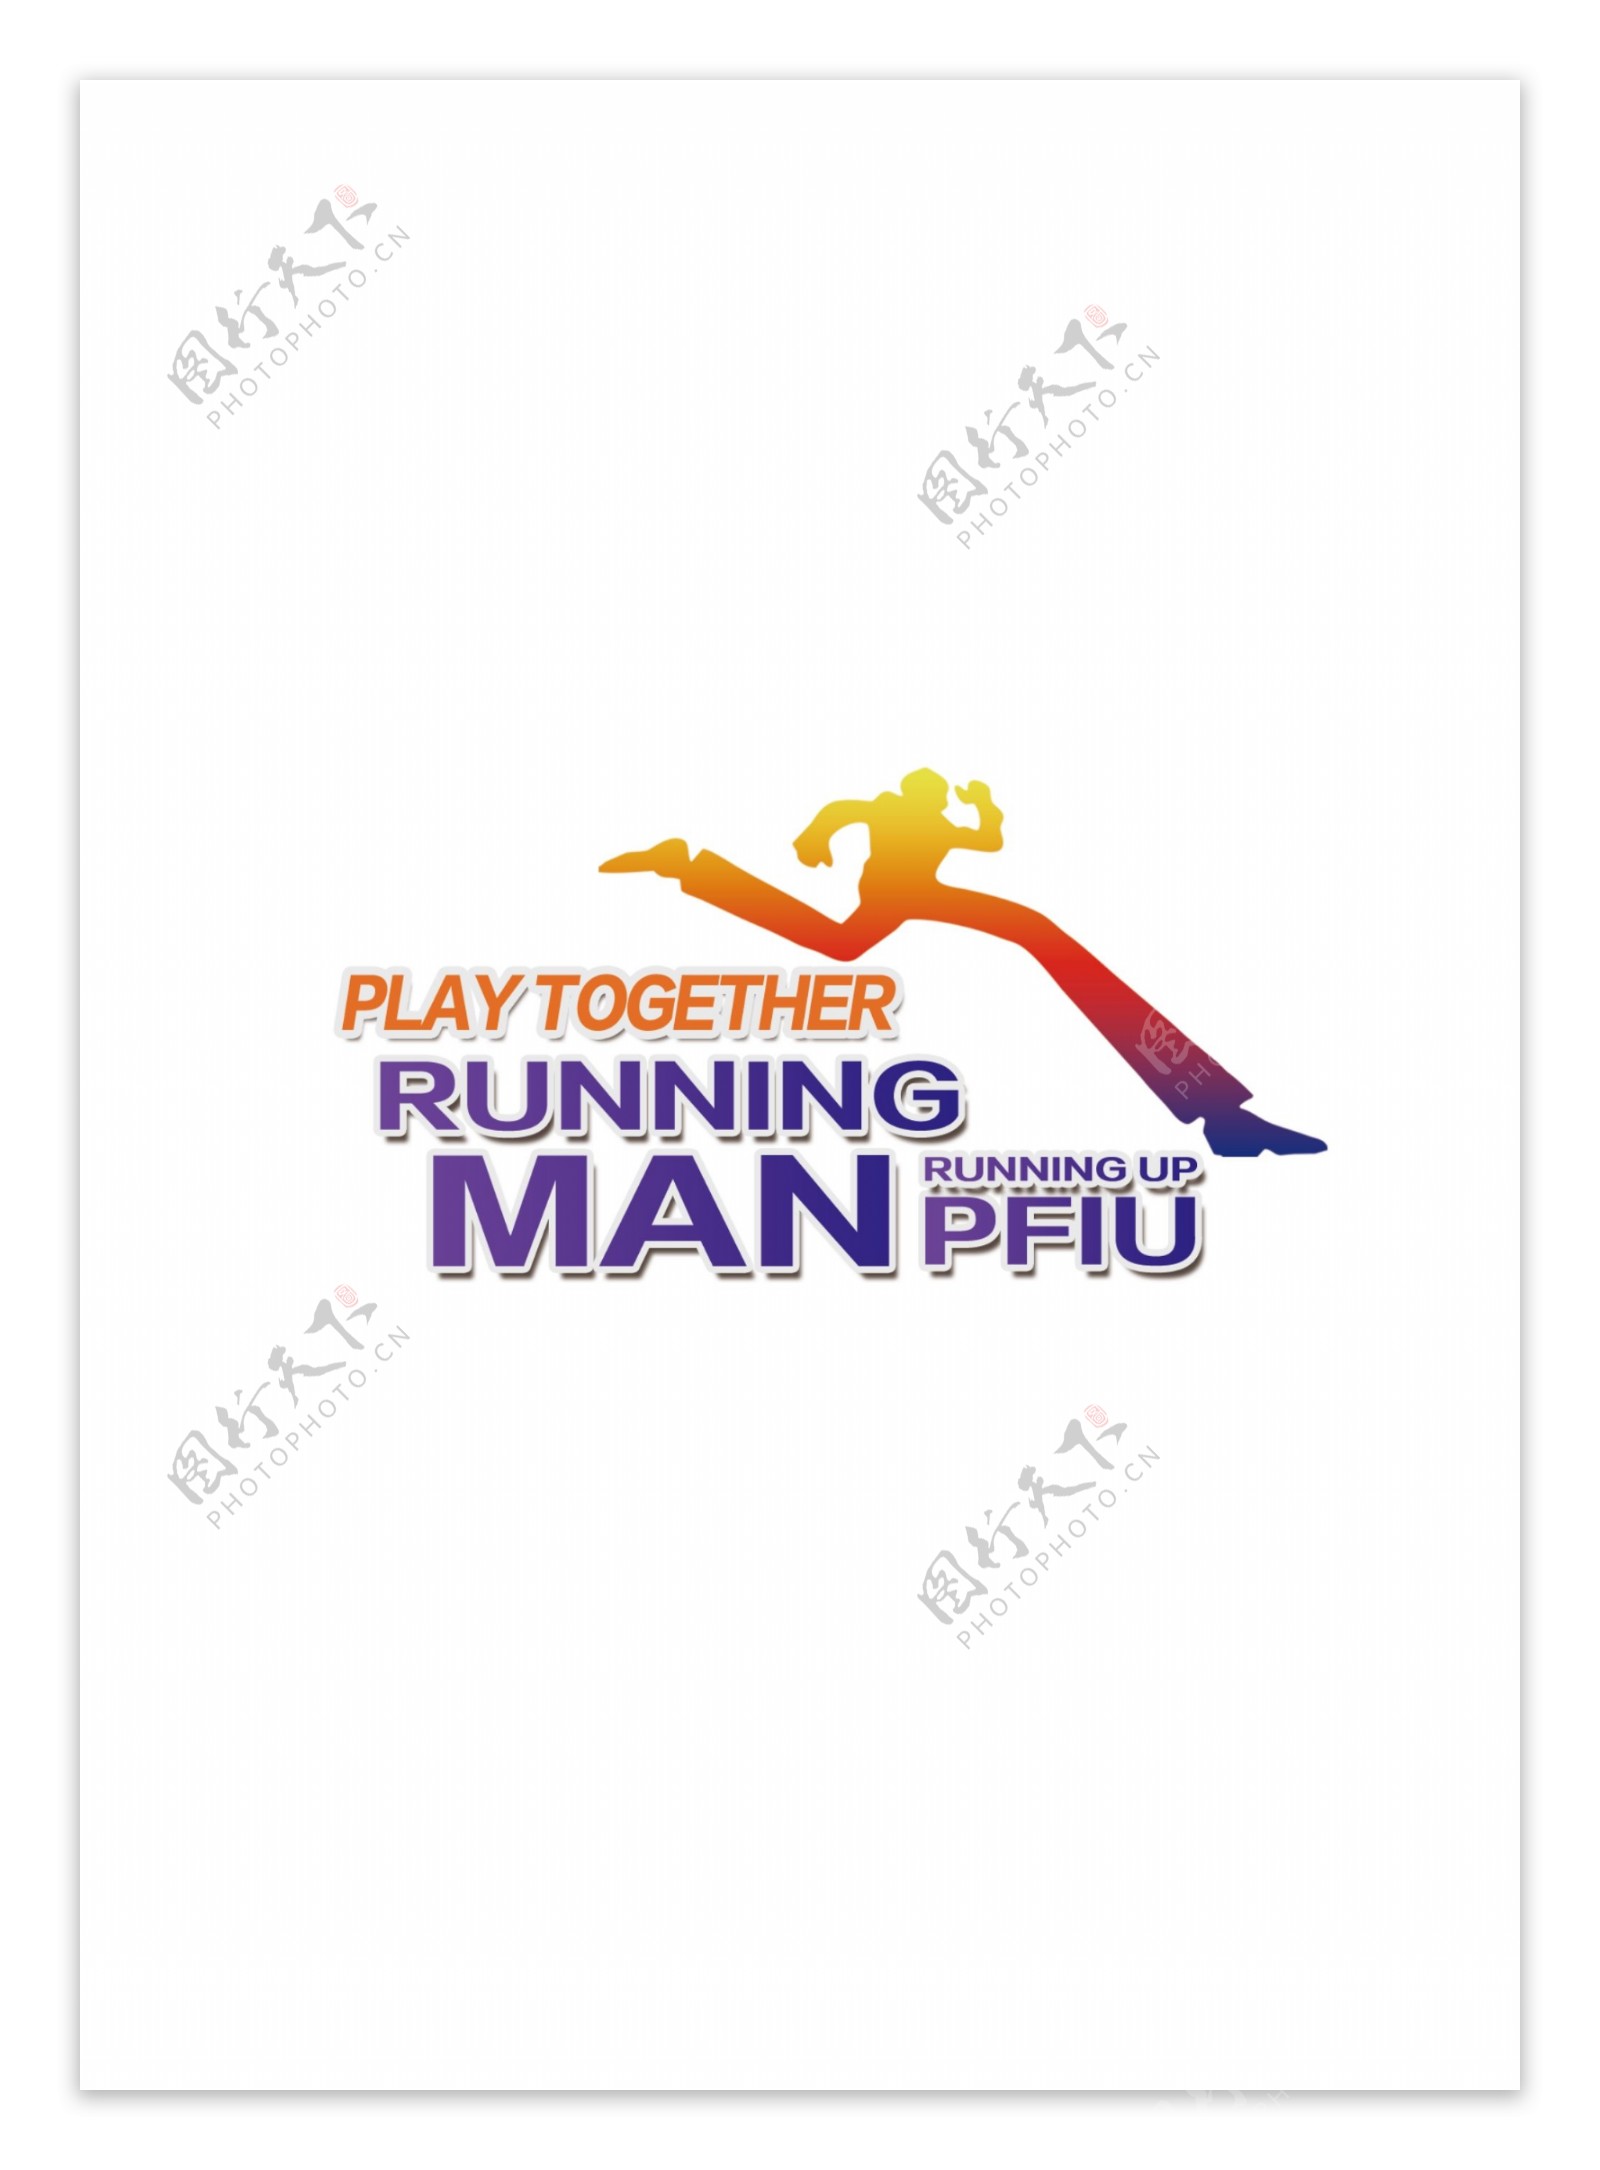 奔跑人物logo